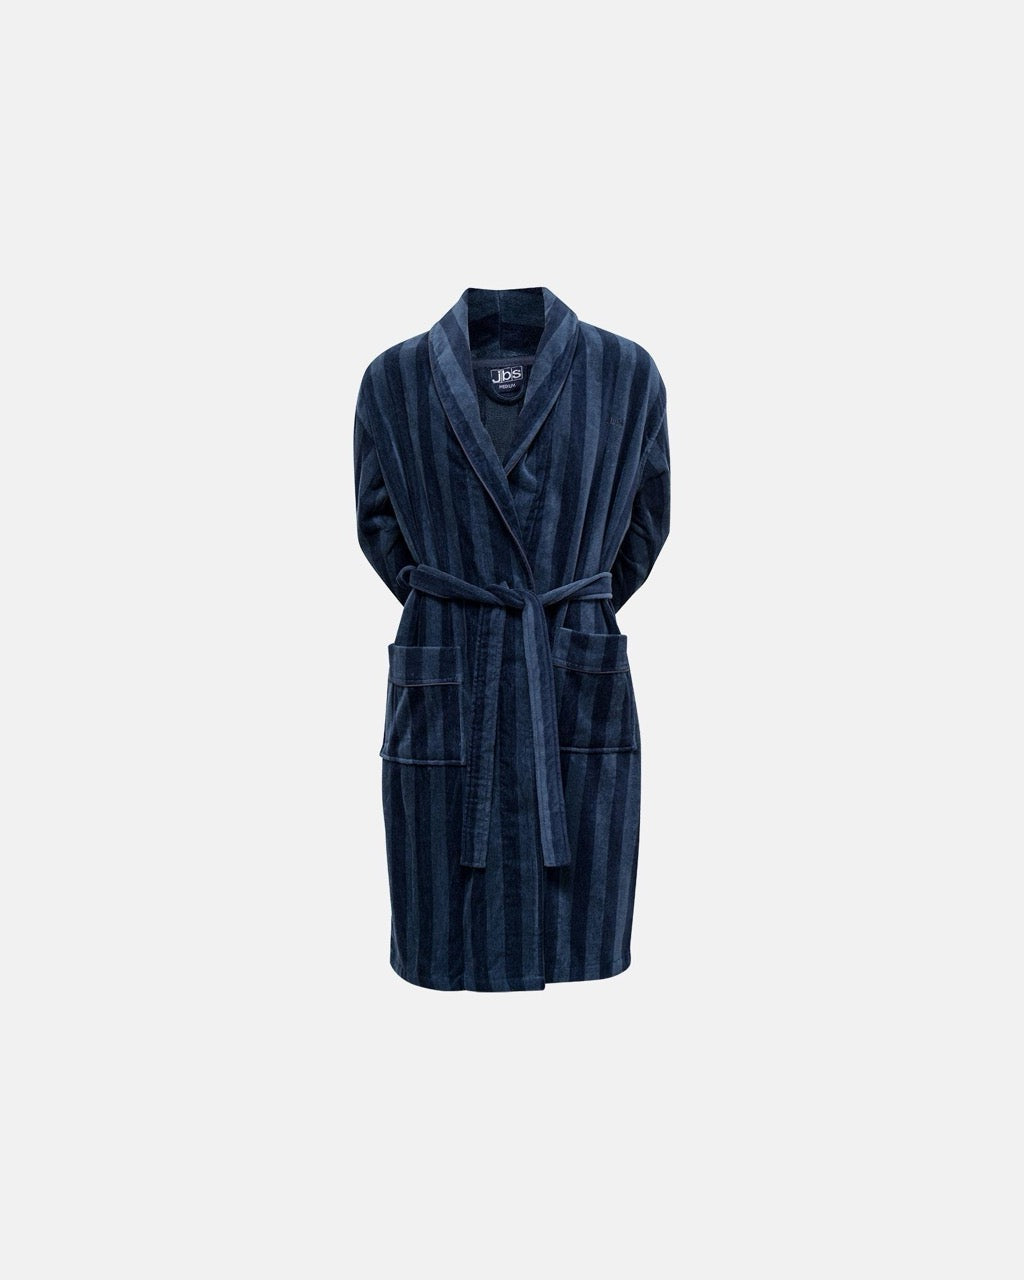 Jbs bathrobe Blue/Navy